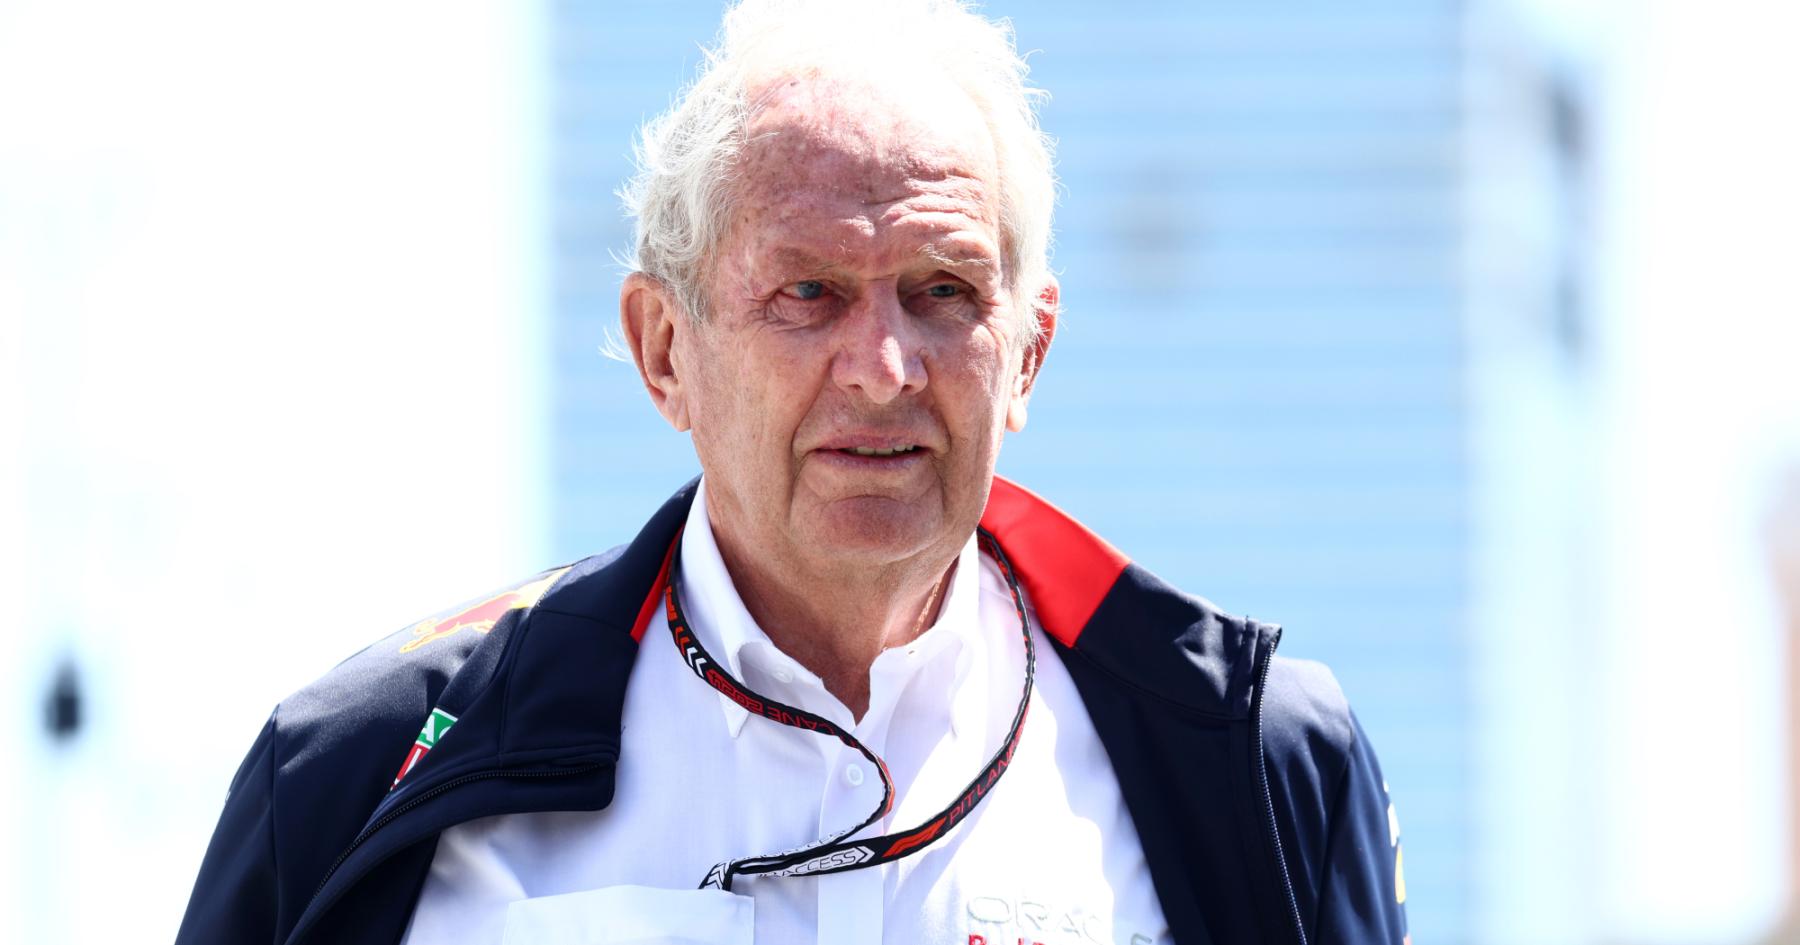 The Unpredictable Future: Marko Contemplates Replacing Ricciardo